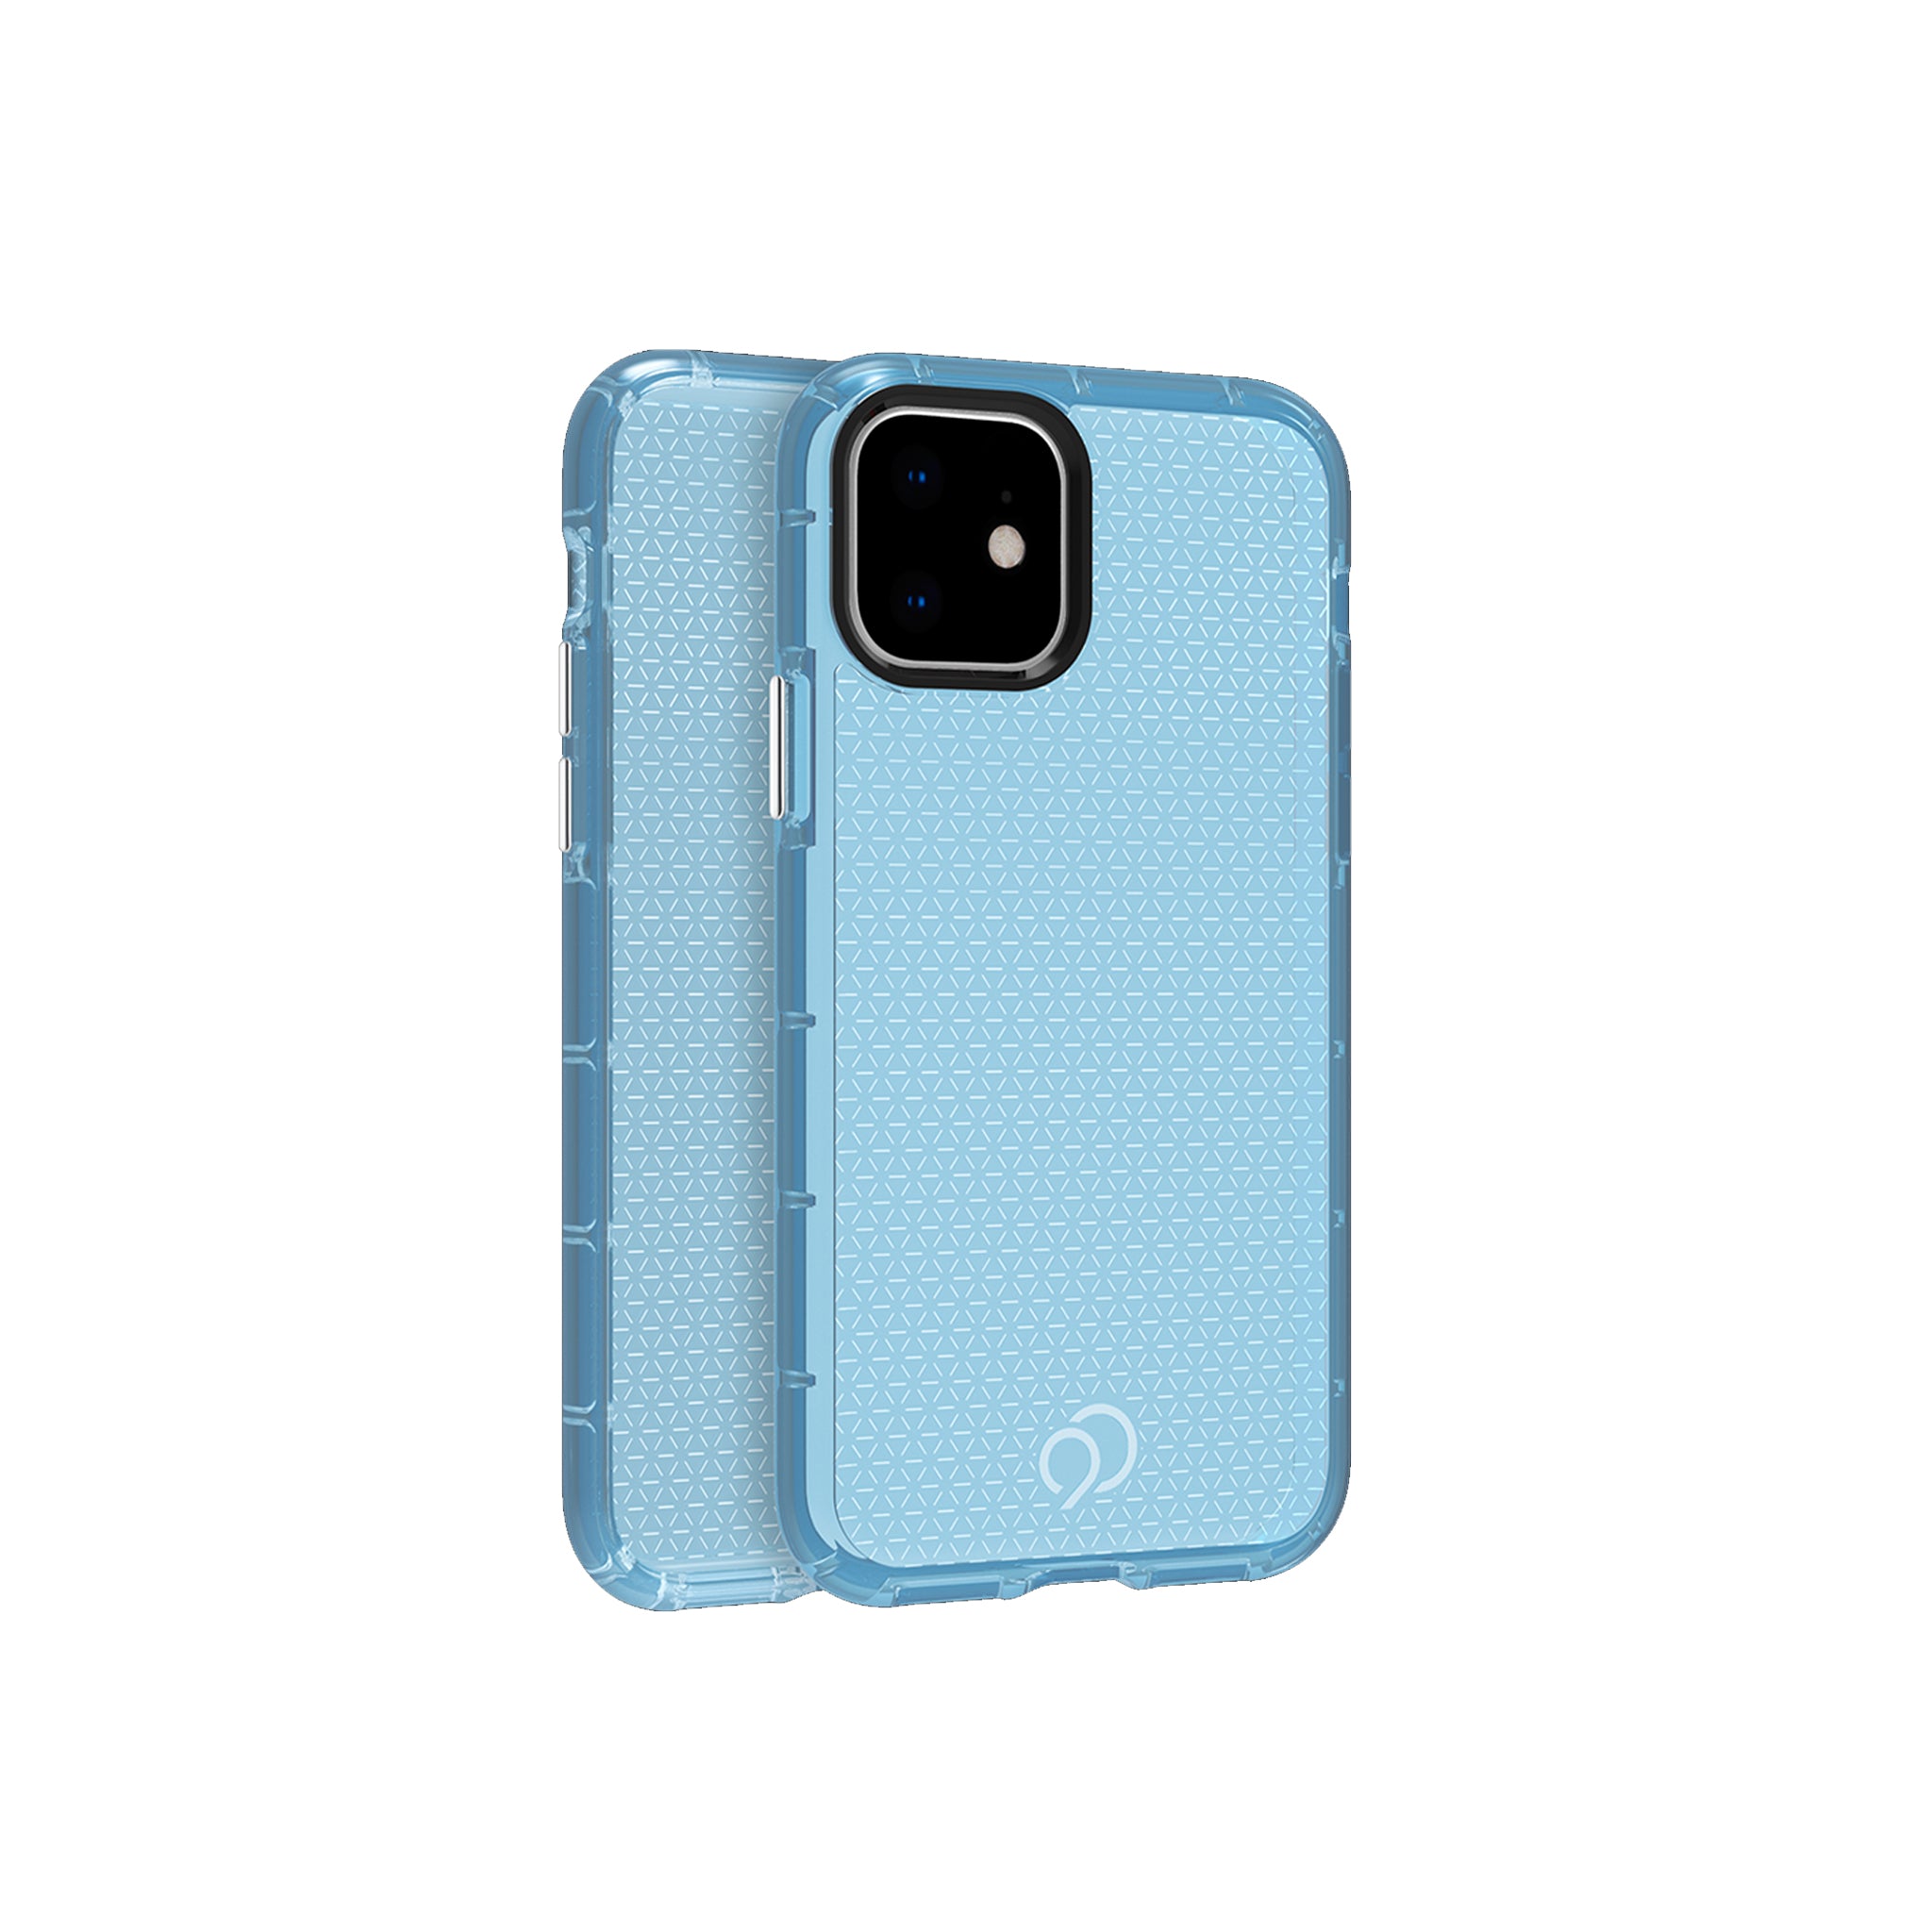 Nimbus9 - Phantom 2 Case For Apple Iphone 11 - Pacific Blue